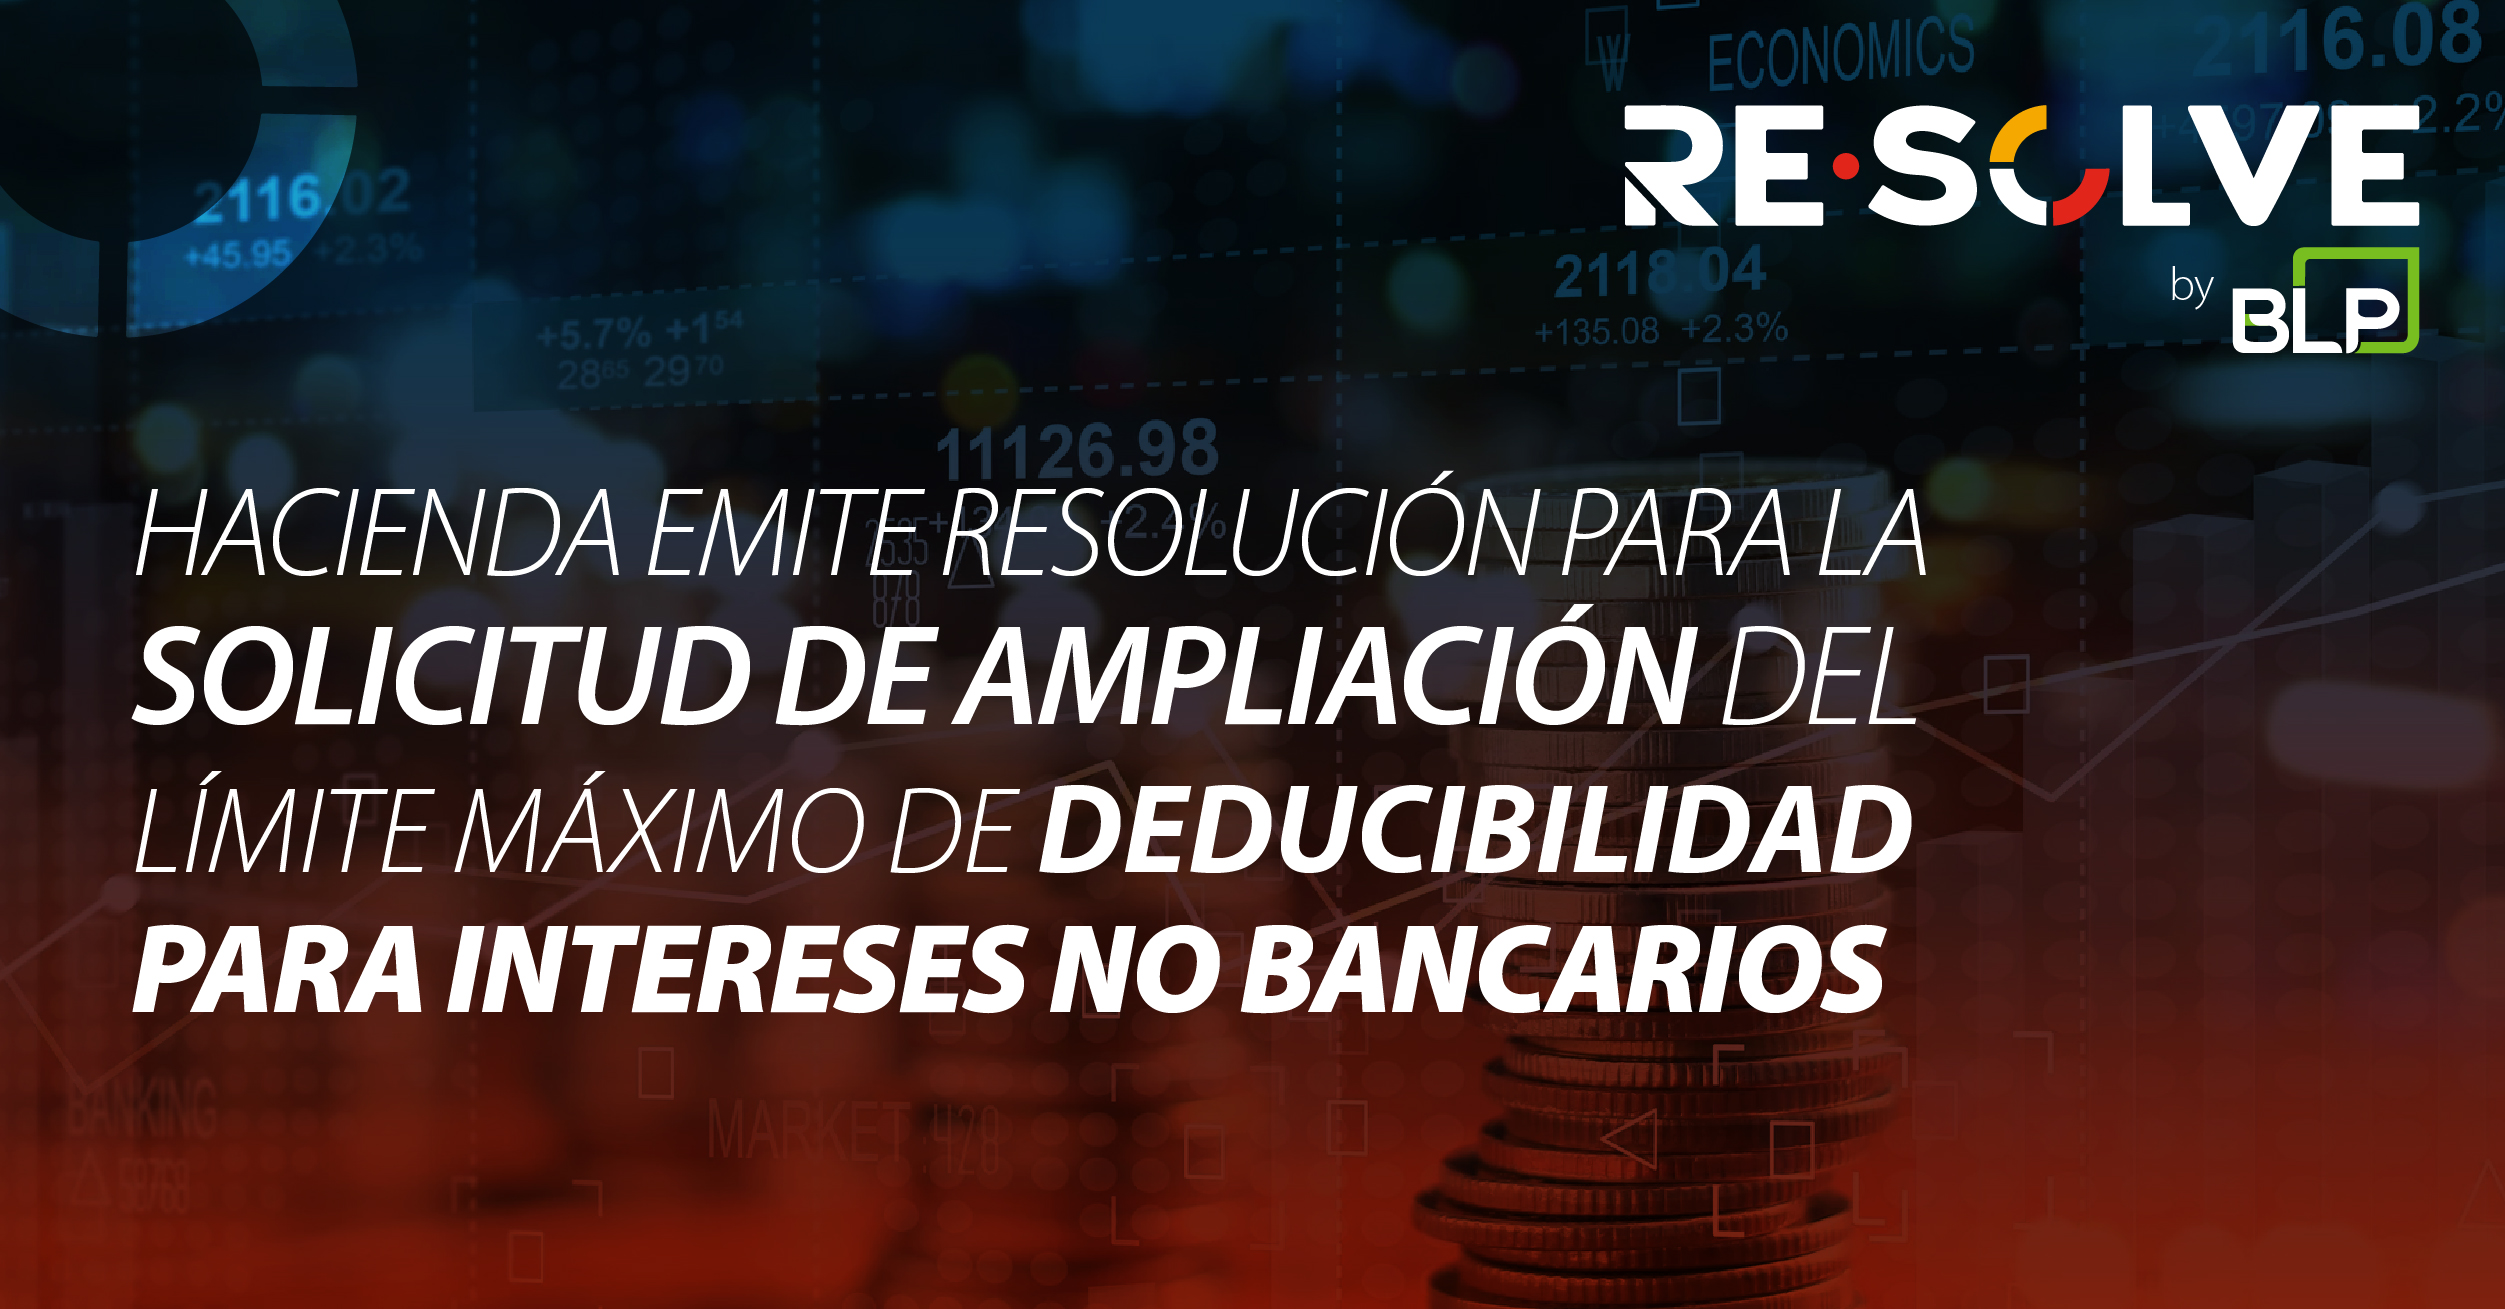 Ministerio de Hacienda de Costa Rica emite resolución para la solicitud de ampliación del límite máximo de deducibilidad para intereses no bancarios